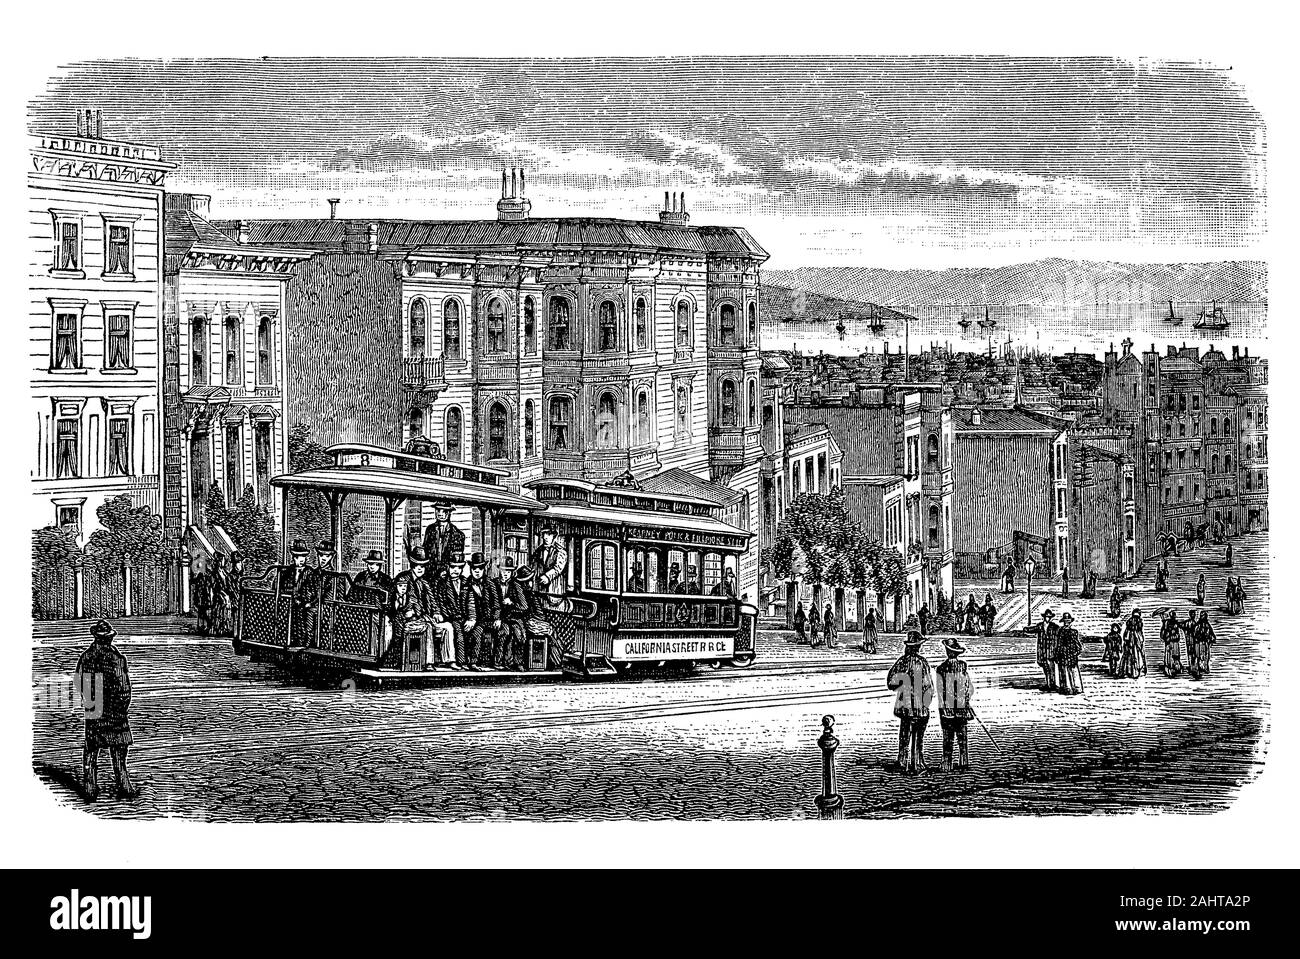 San Francisco Cable Car System, städtische Verkehrsmittel in San Francisco mit 23 Zeilen am Ende des 19. Jahrhunderts. Stockfoto